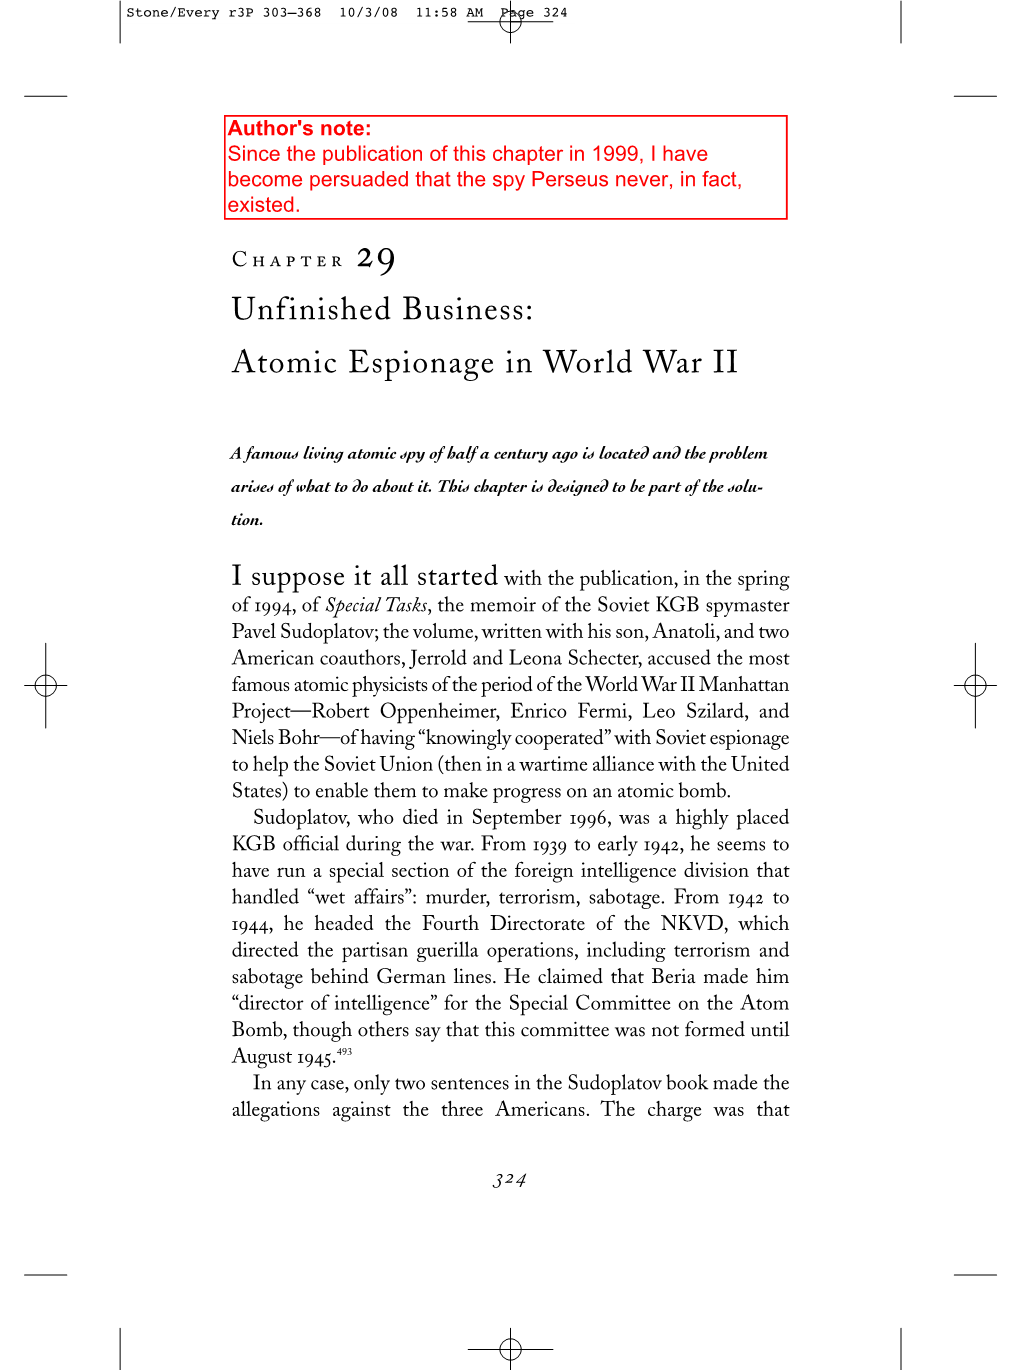 Atomic Espionage in World War II